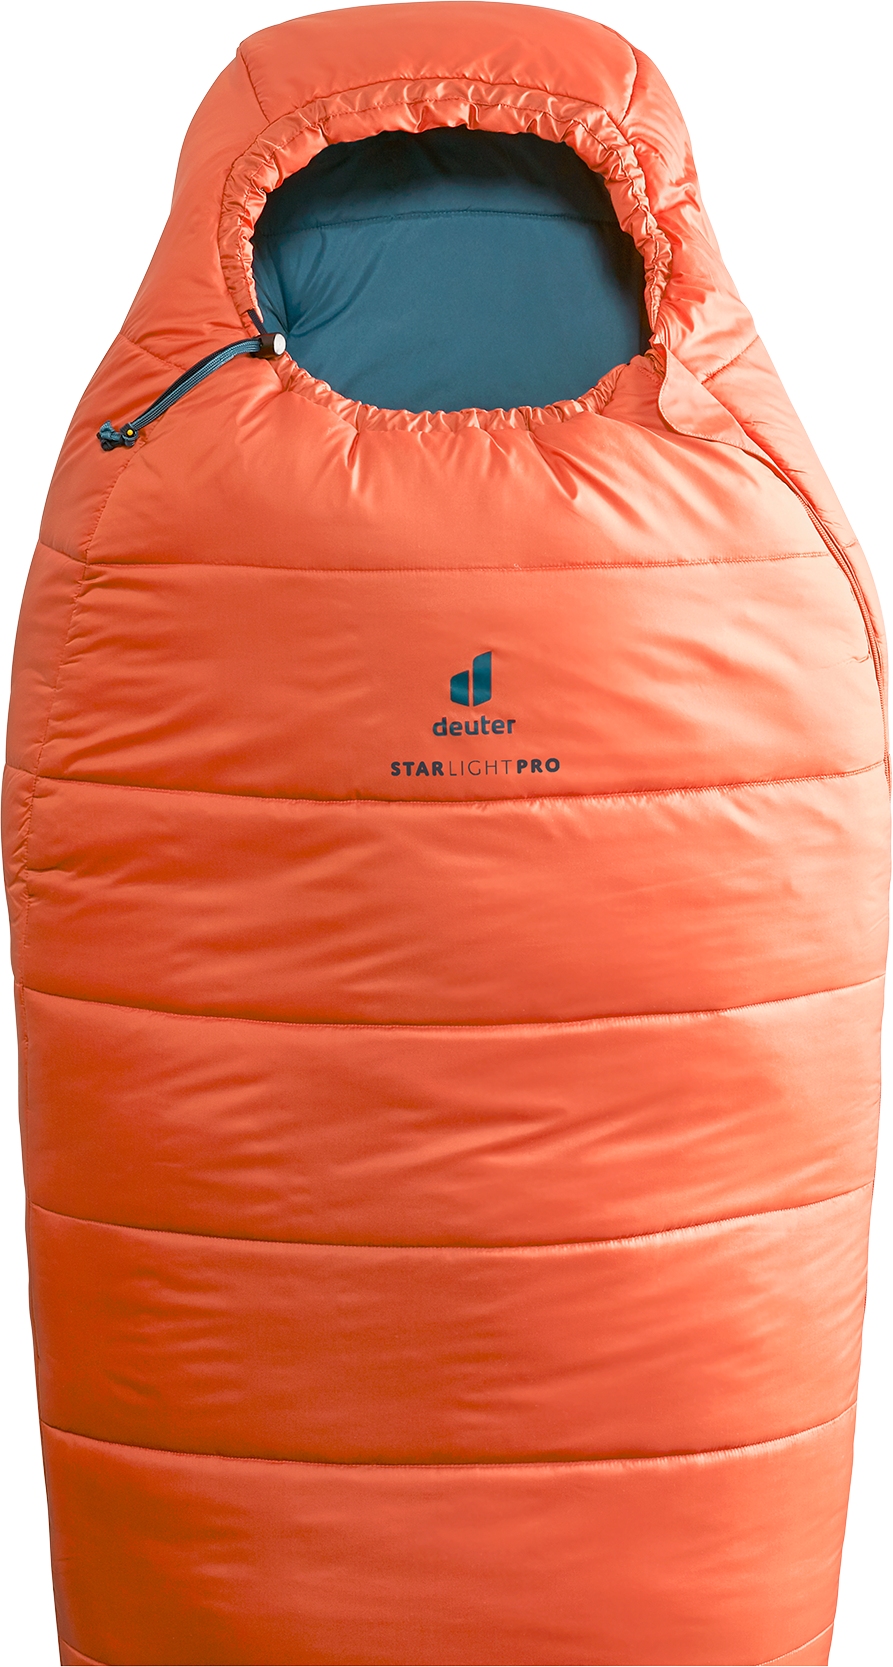 een kopje aanvaardbaar Eentonig deuter Starlight Pro | Child sleeping bag